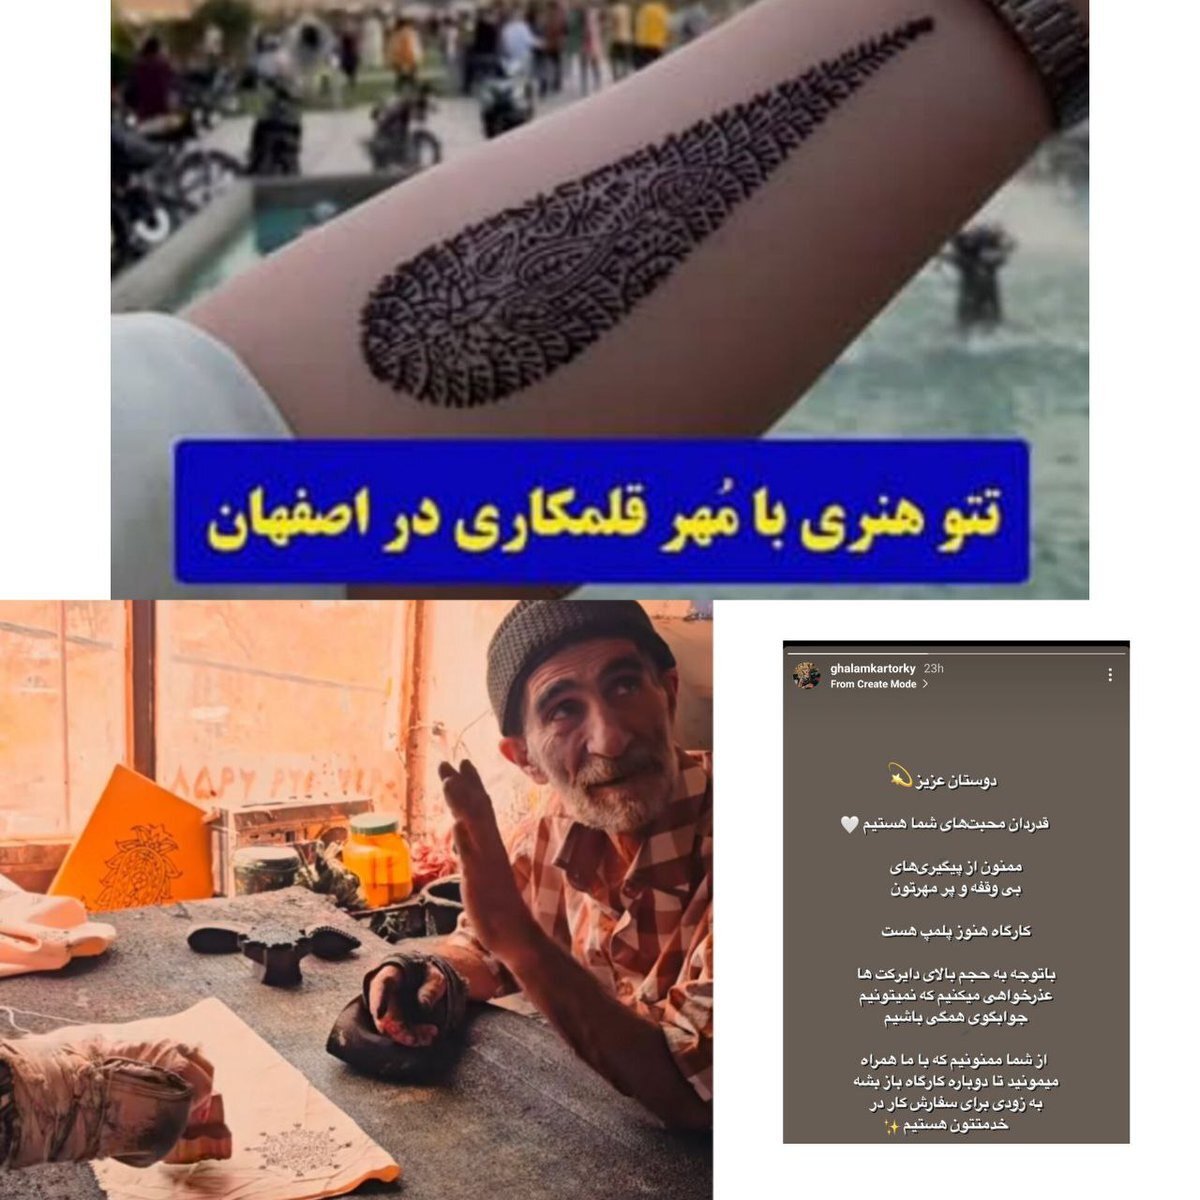 پلمب یک کارگاه قلمکاری در اصفهان که پر بازتاب شد!